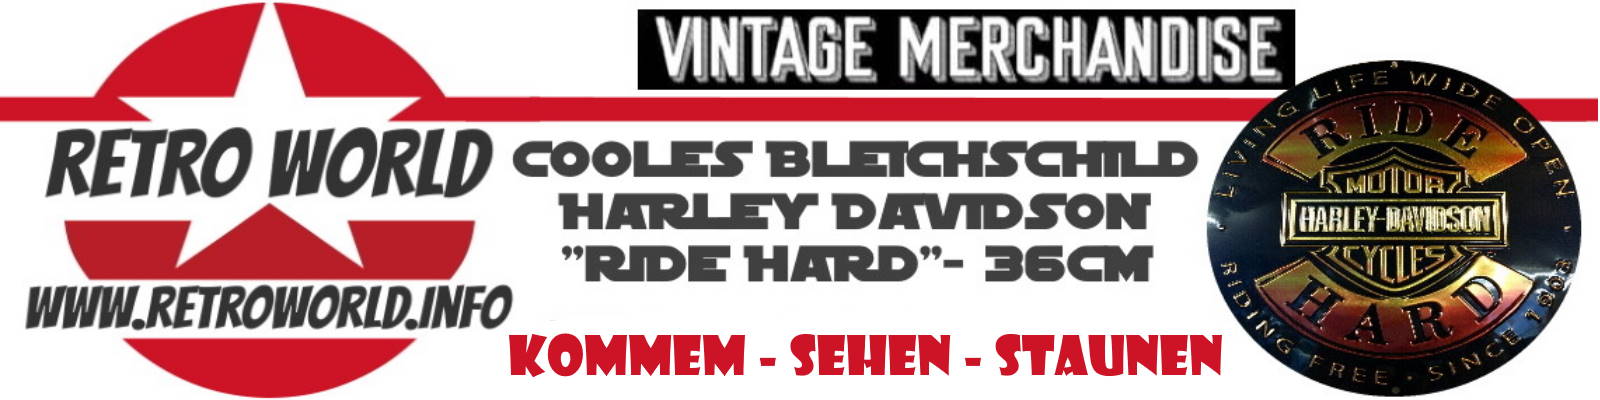 Banner Harley Belichschild 901